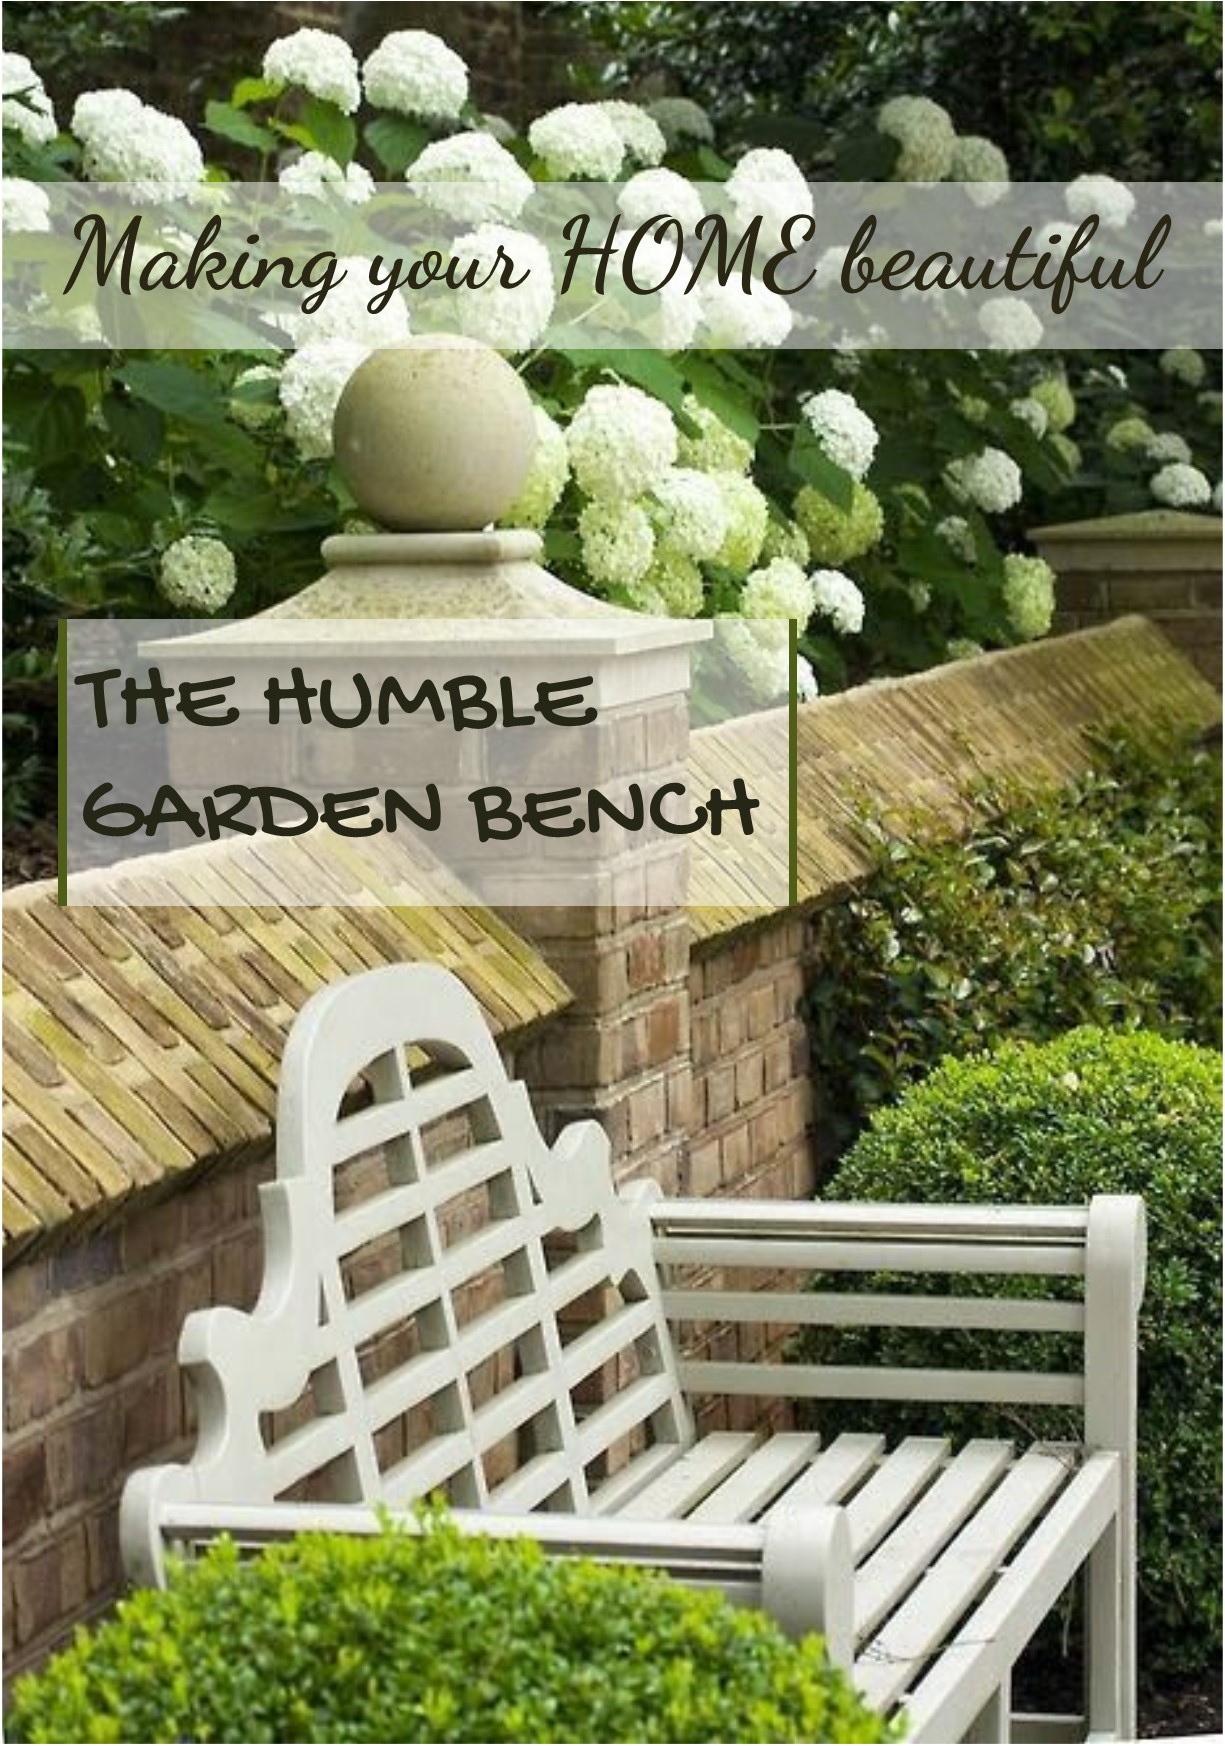 The Humble Garden Bench